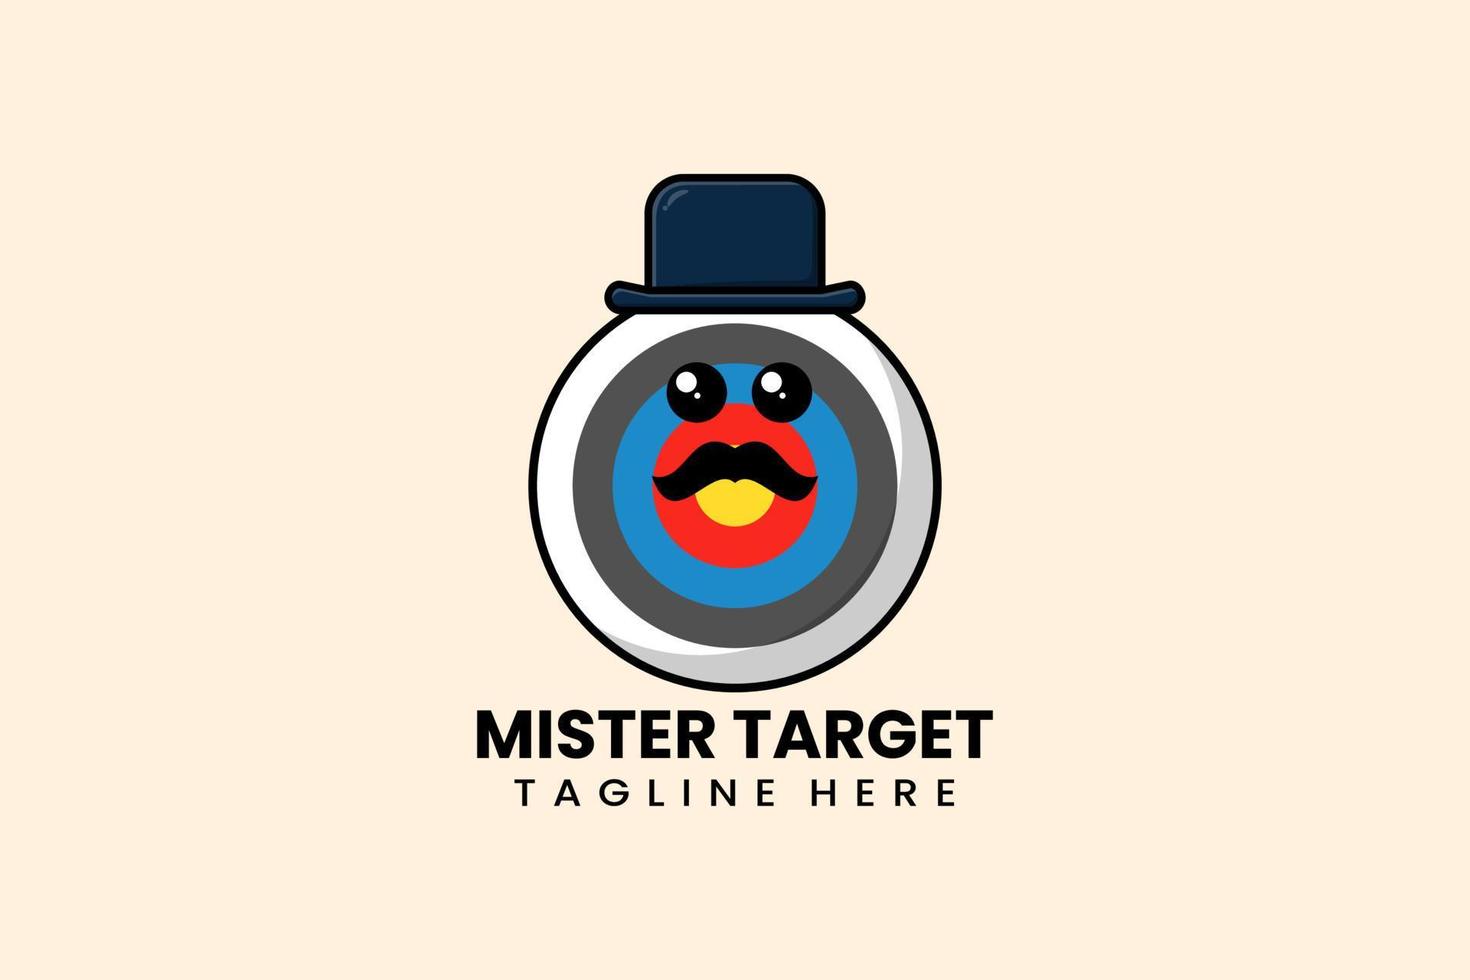 plantilla plana moderna mister target logo vector